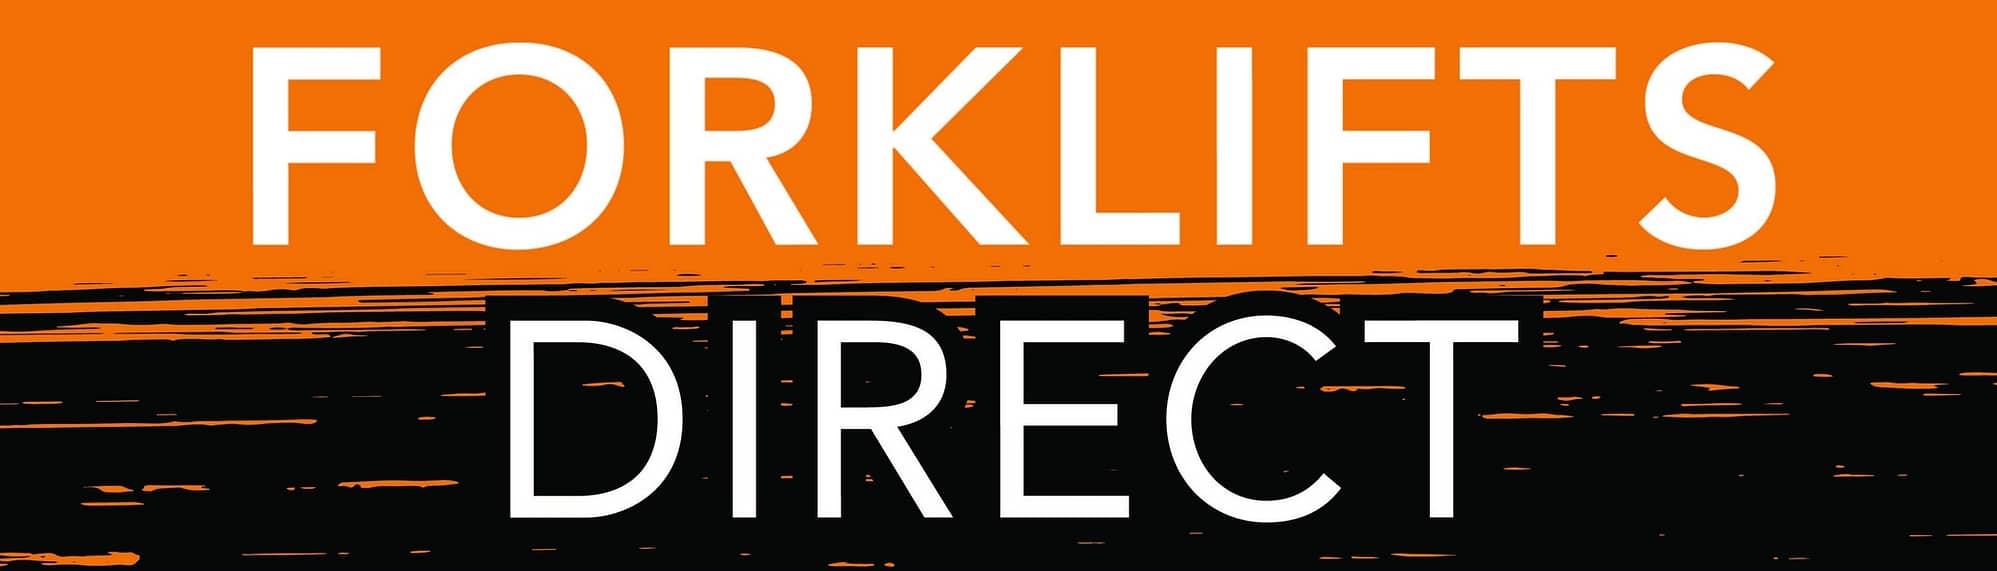 Forklifts Direct Logo